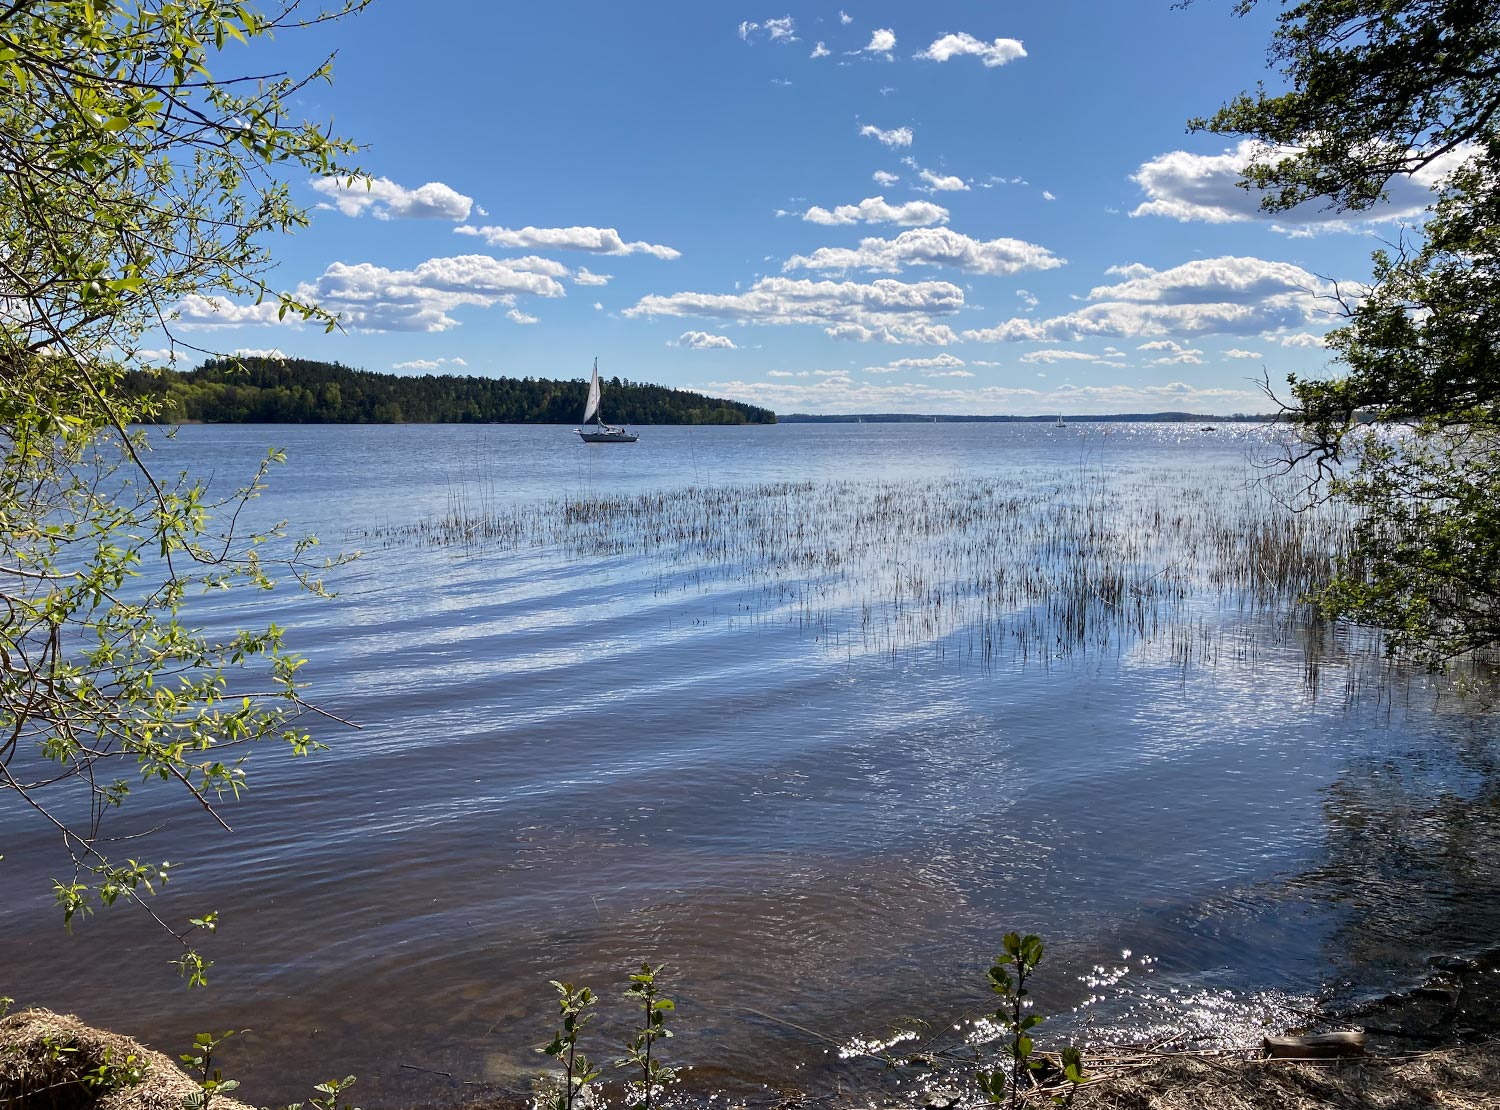 Bild på en sjö i solsken. I förgrunden vass och träd vid sjökanten. Ute på sjön syns en segelbåt.